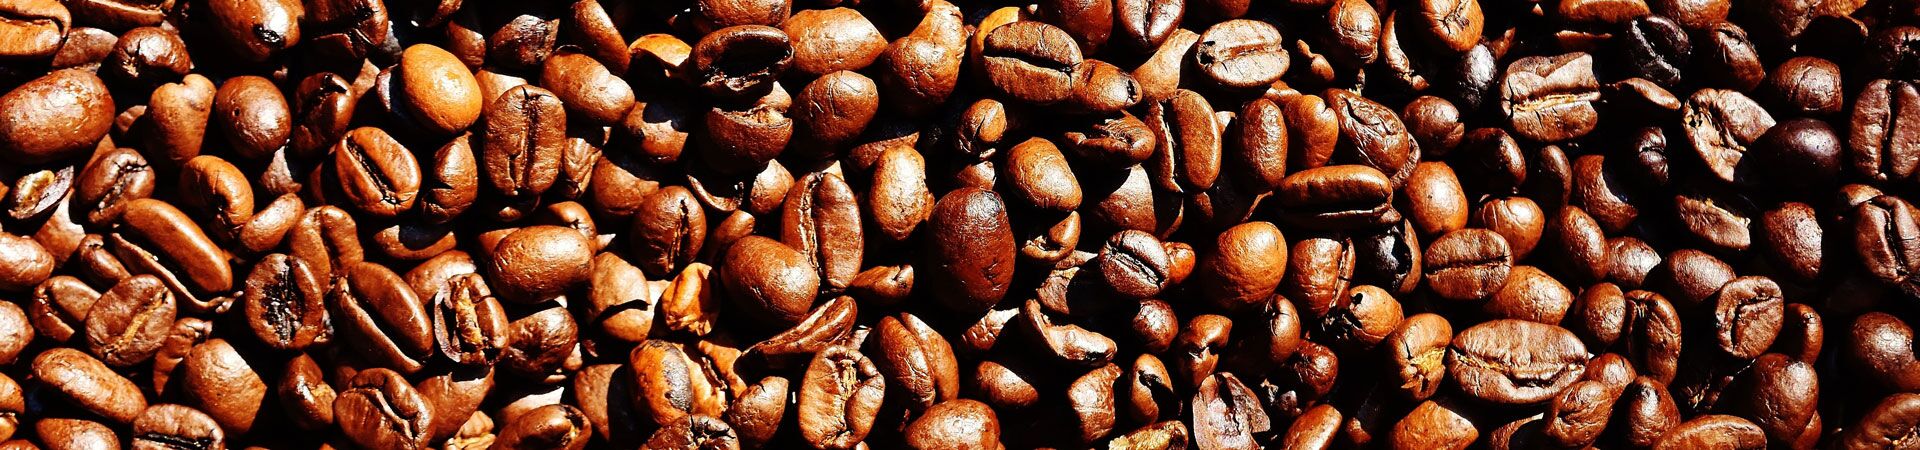 От чего зависит крепость зернового кофе?